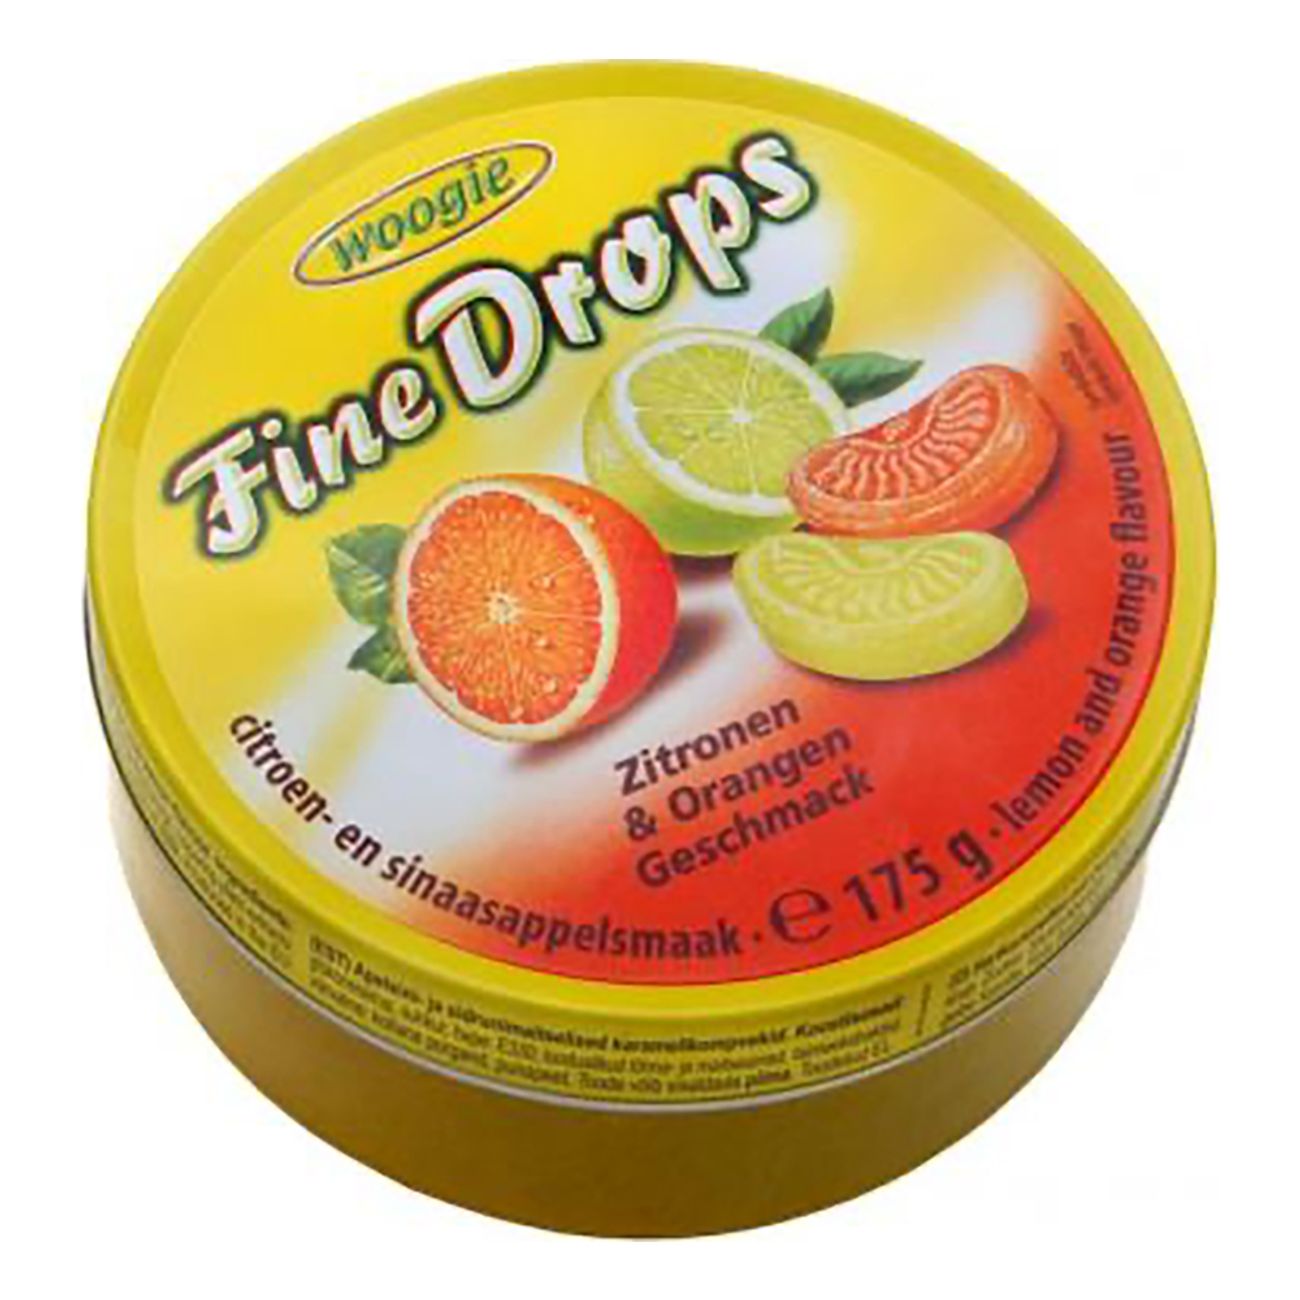 fine-drops-citron-apelsin-i-platburk-82854-2